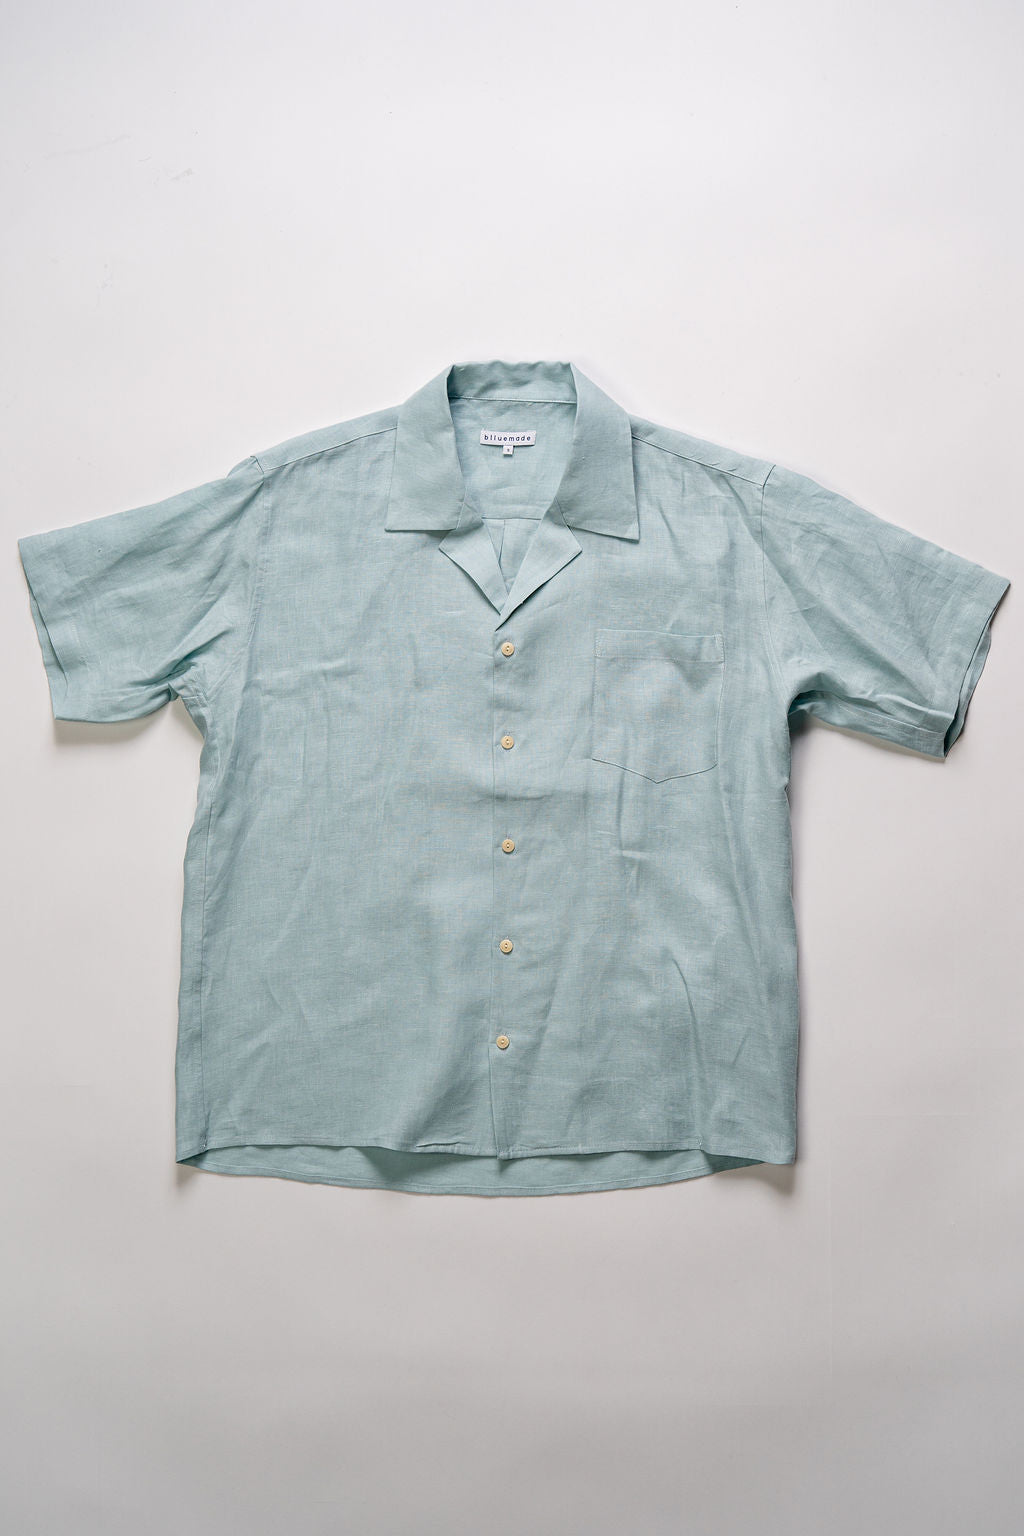 Blluemade Spread Collar Shirt - Light Blue Belgian Linen